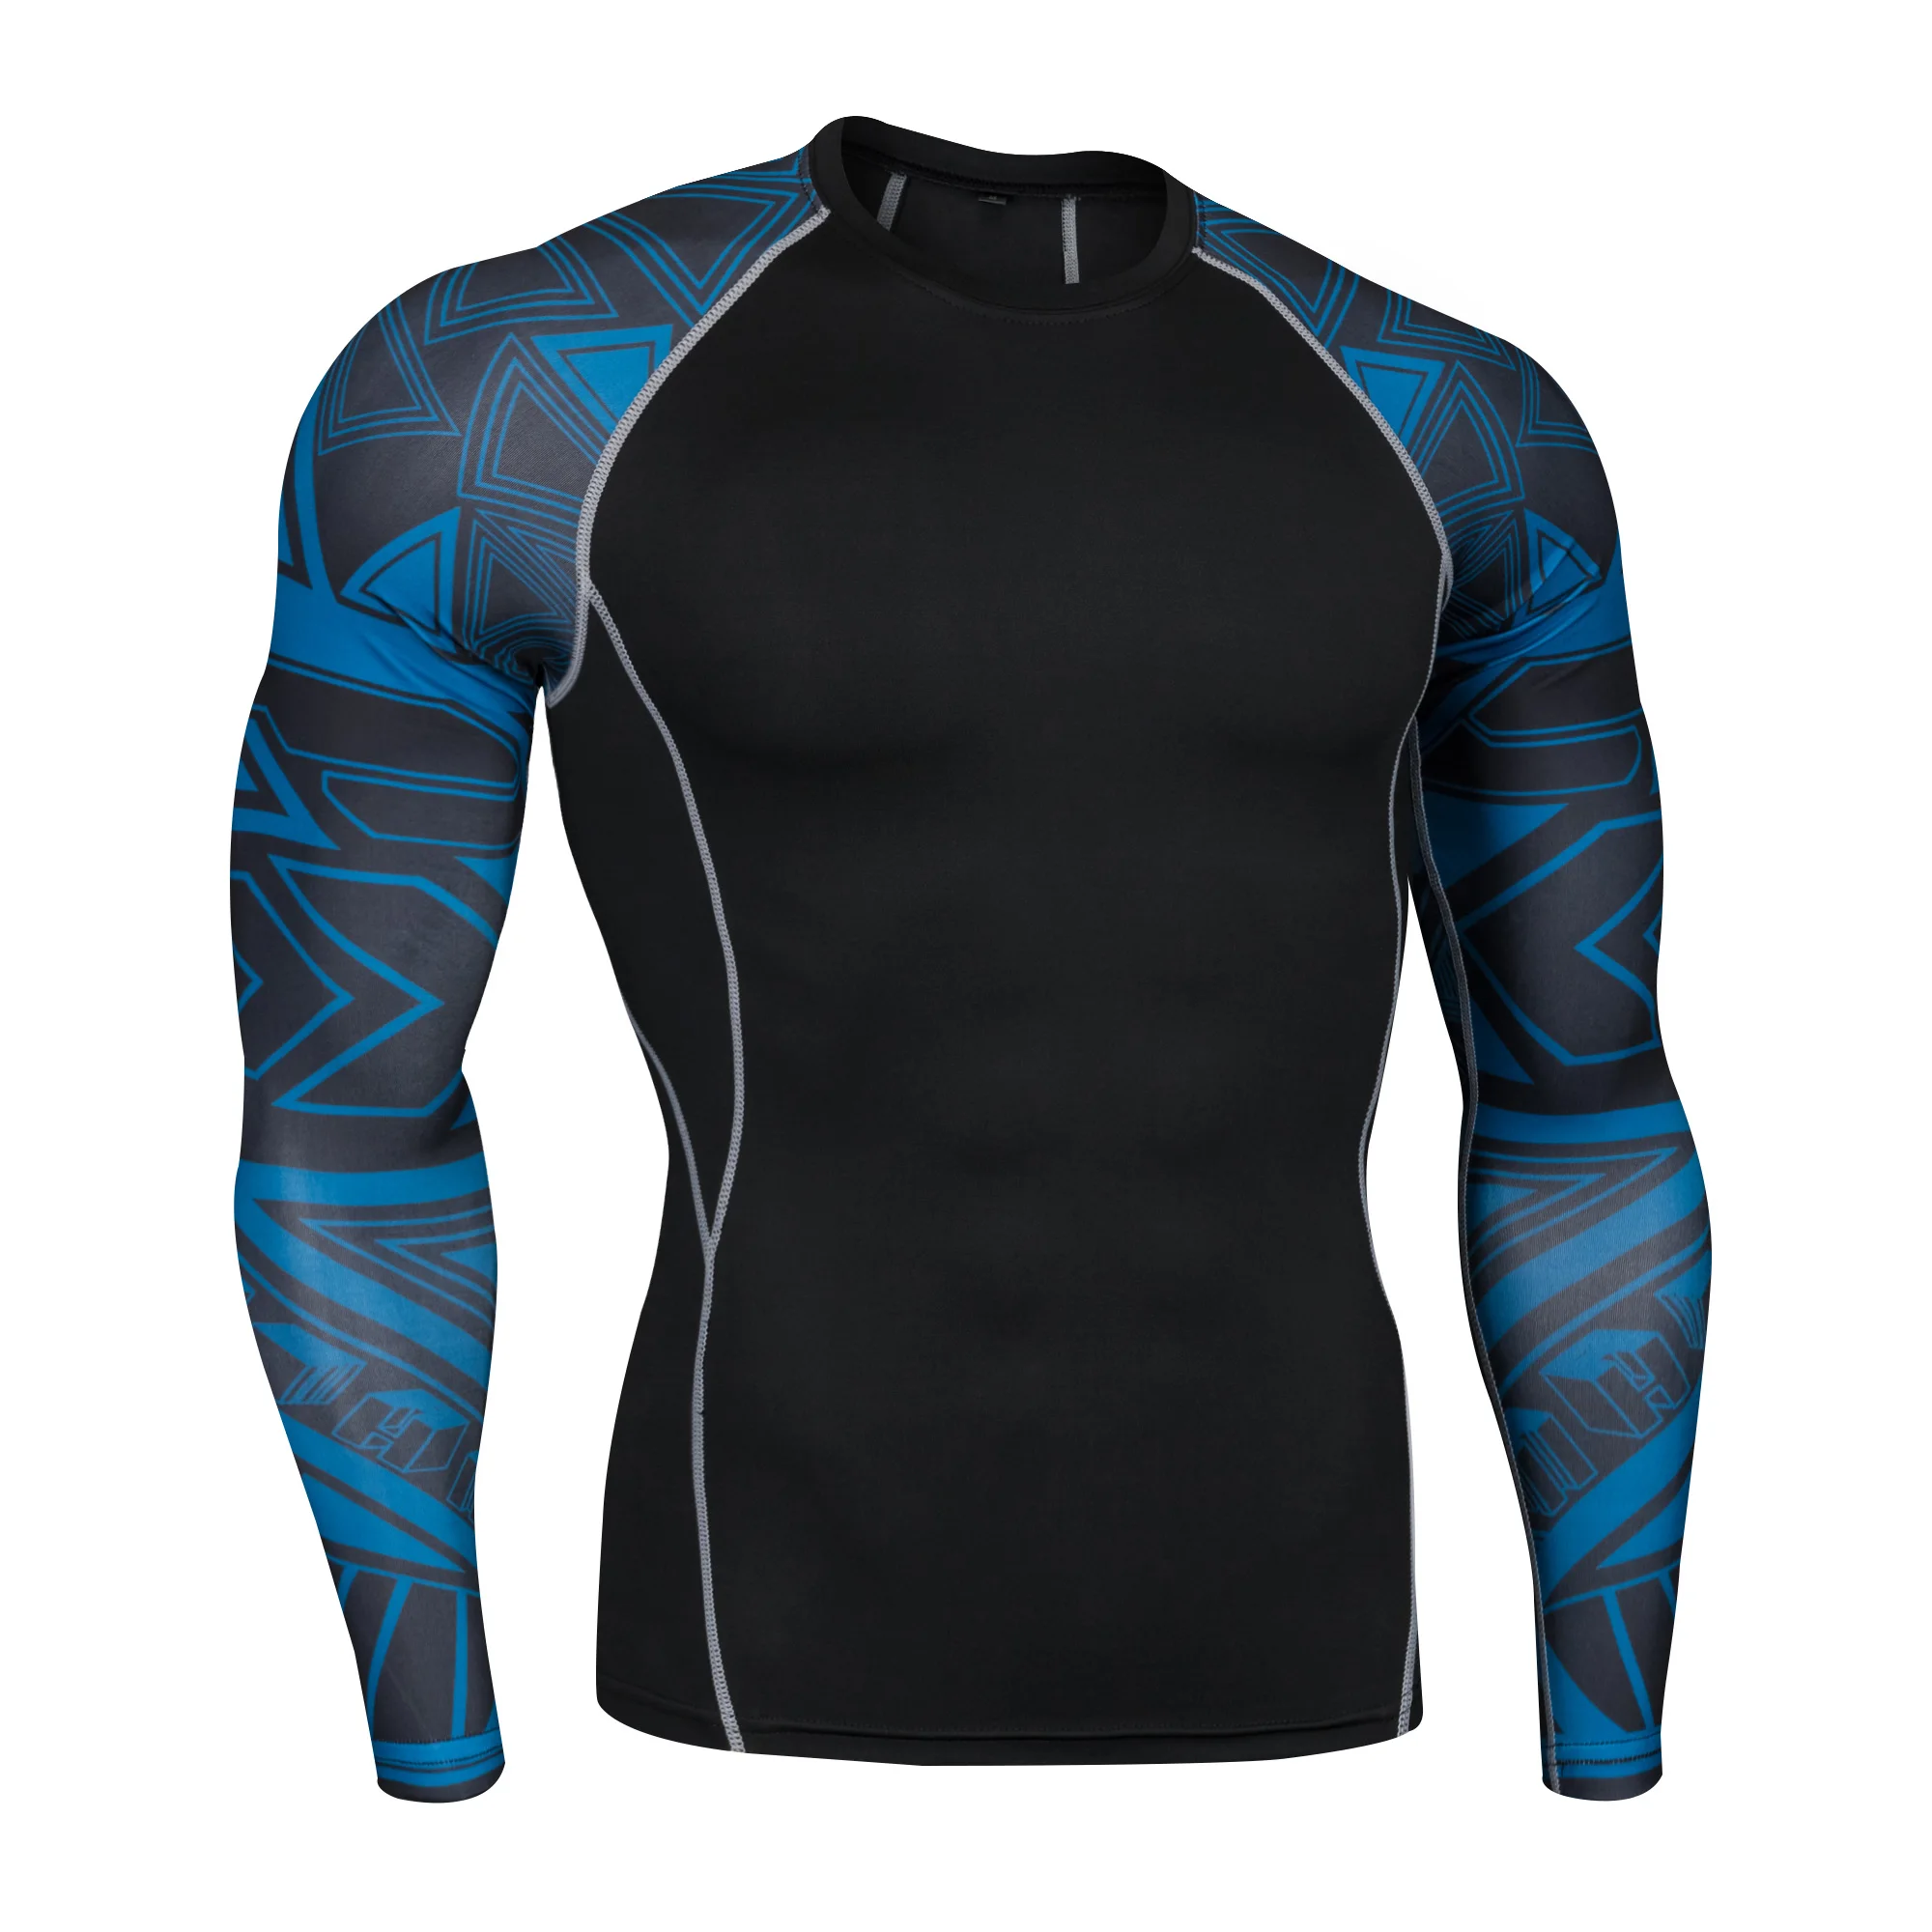 Мужская футболка для бега с принтом фитнес-рубашка гидрокостюм с длинным рукавом Топ Футболка для кроссфита быстросохнущие Компрессионные спортивные рубашки 4XL